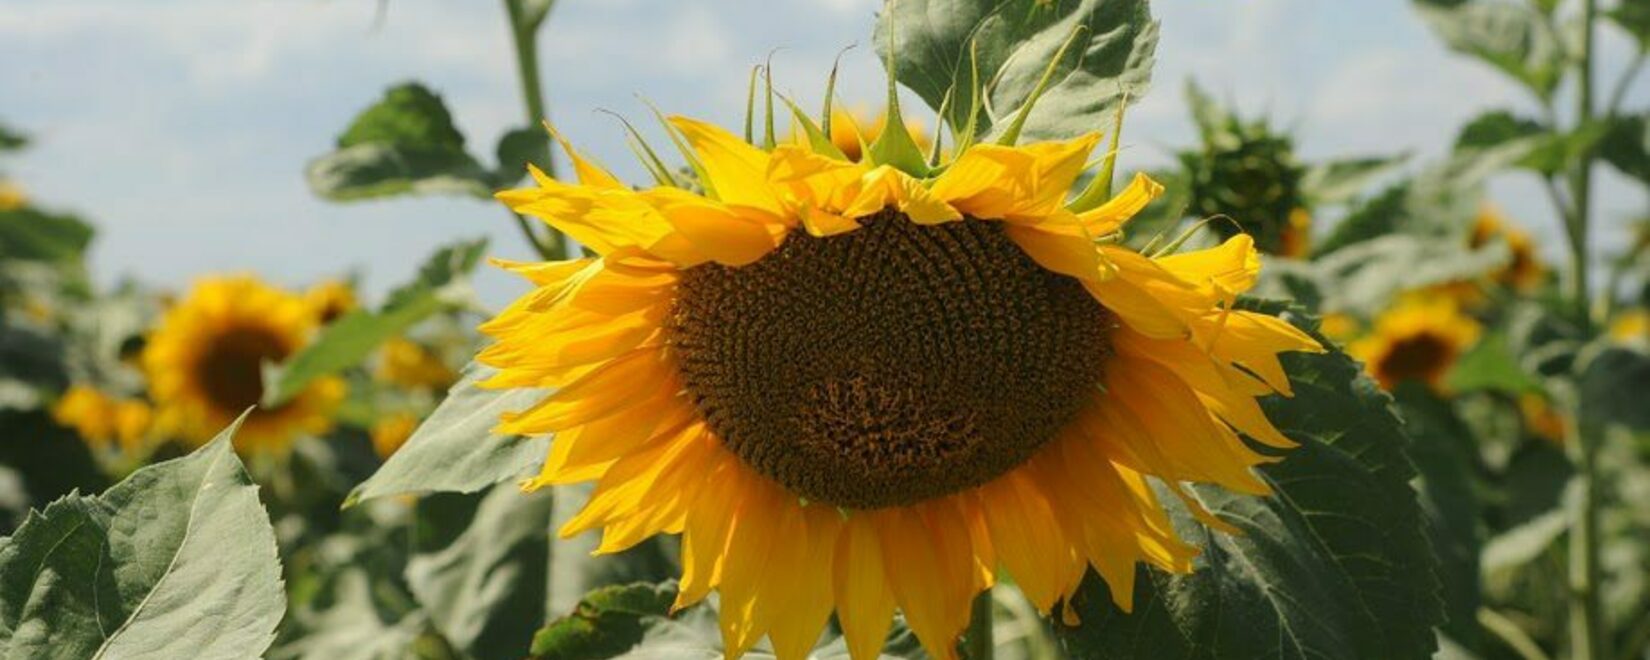 萨拉托夫农民收获了一百五十万吨向日葵